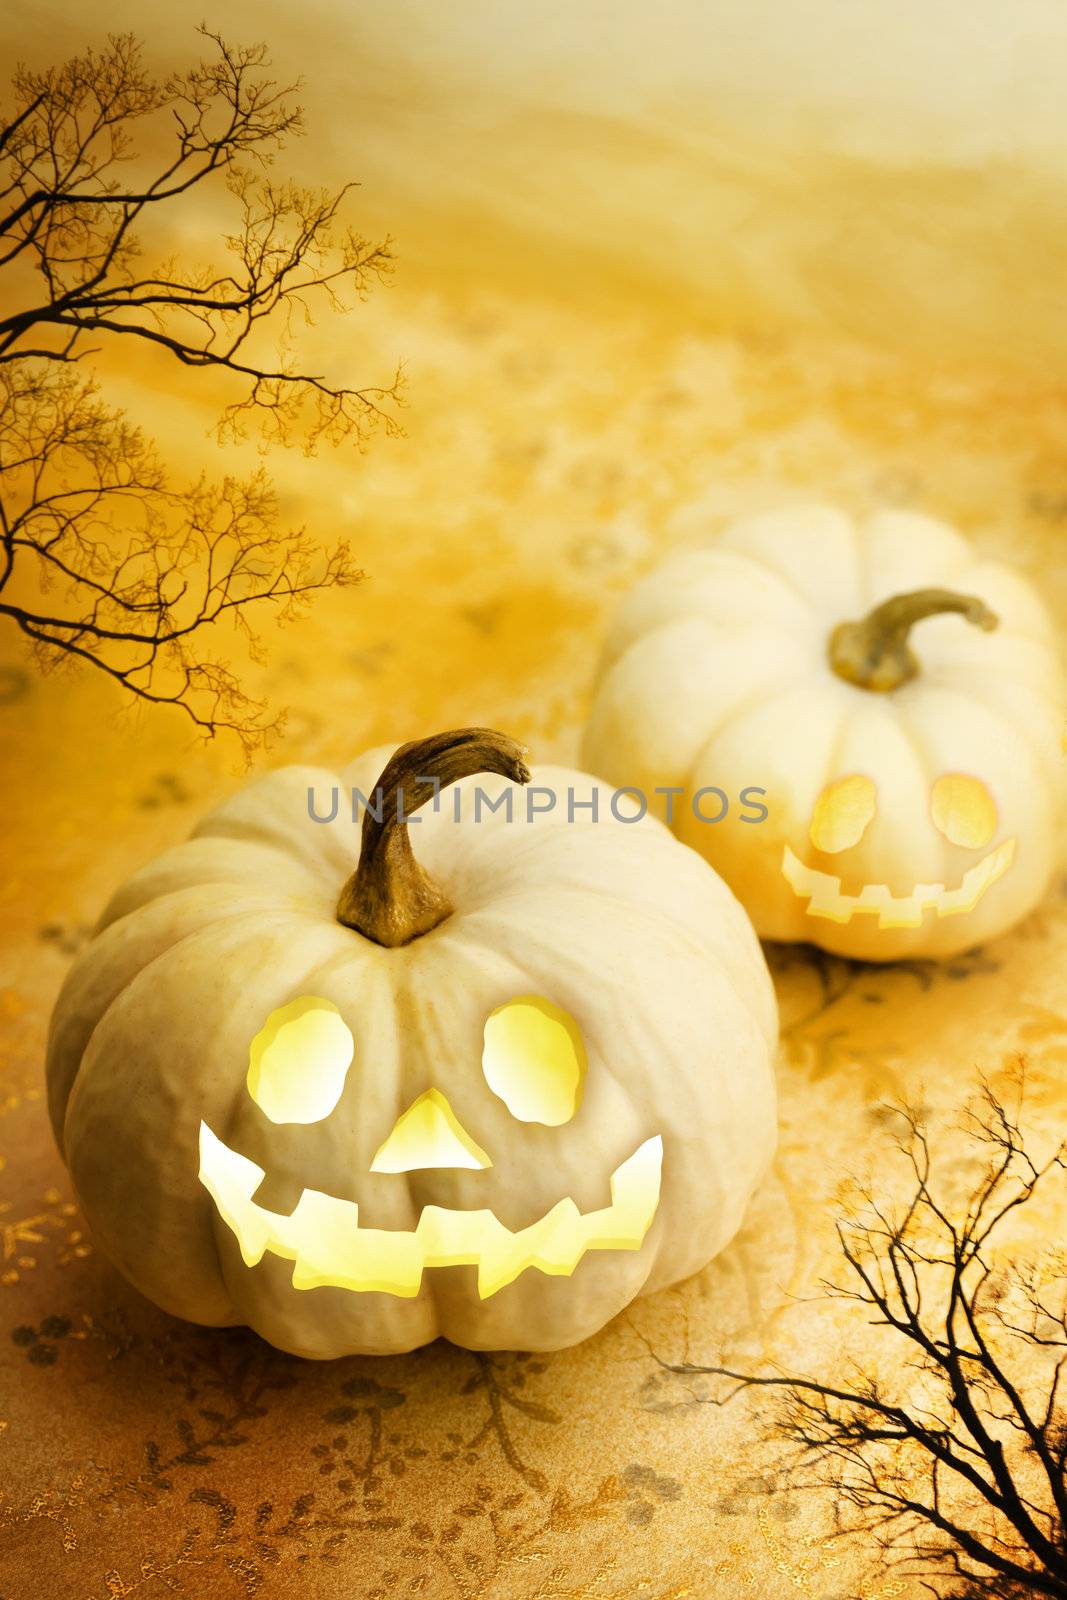 Halloween pumpkins by melpomene